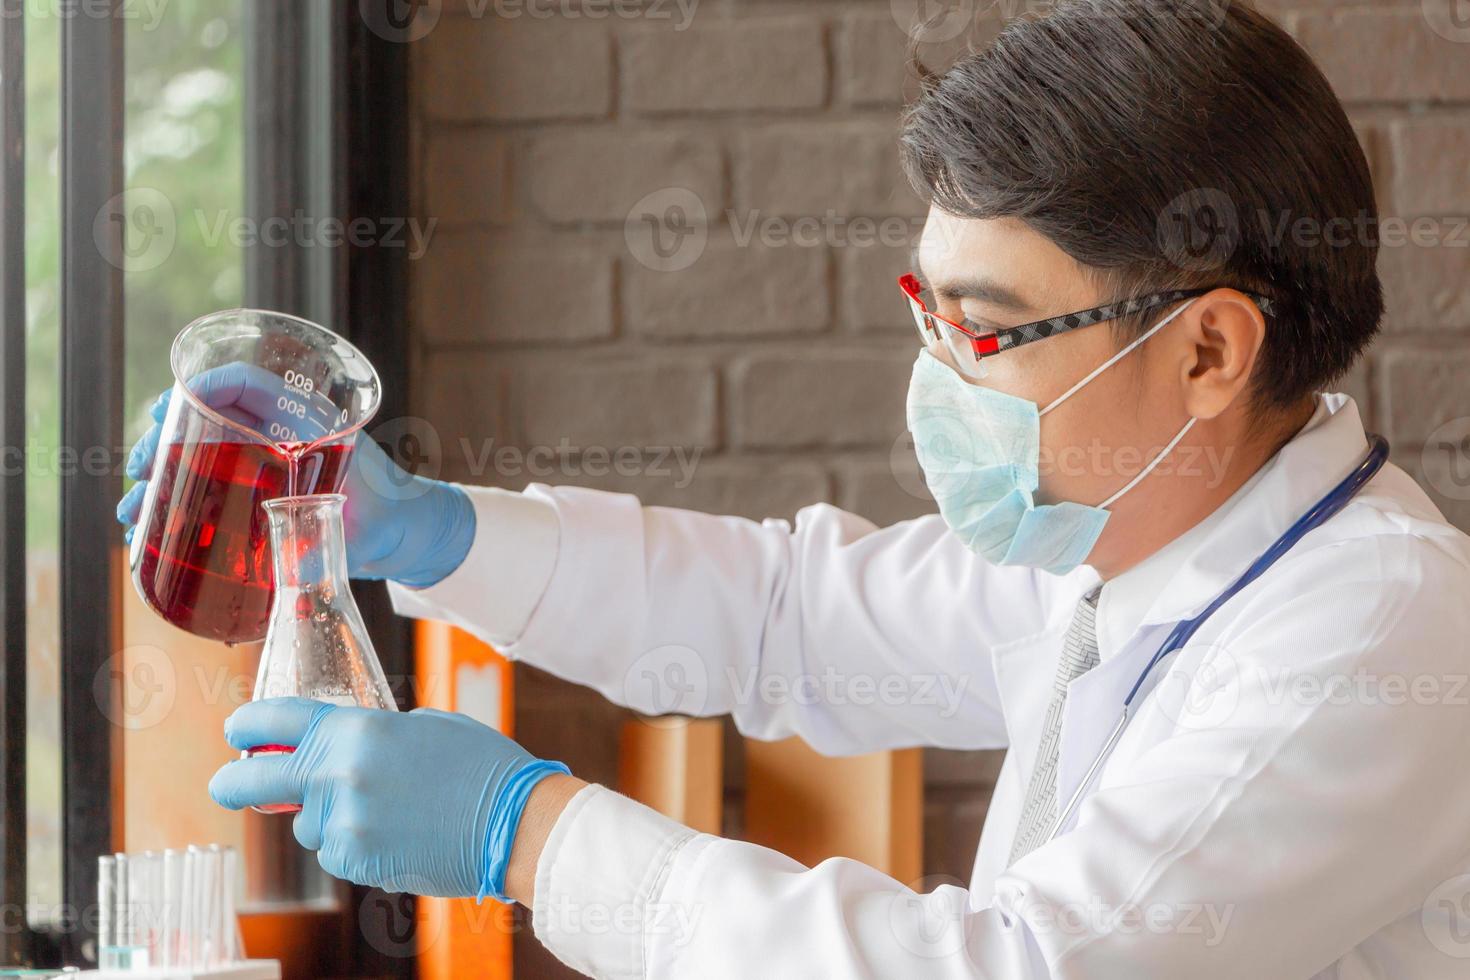 arts die medische reageerbuizen analyseert die beker met rode vloeistof in laboratorium onderzoeken foto